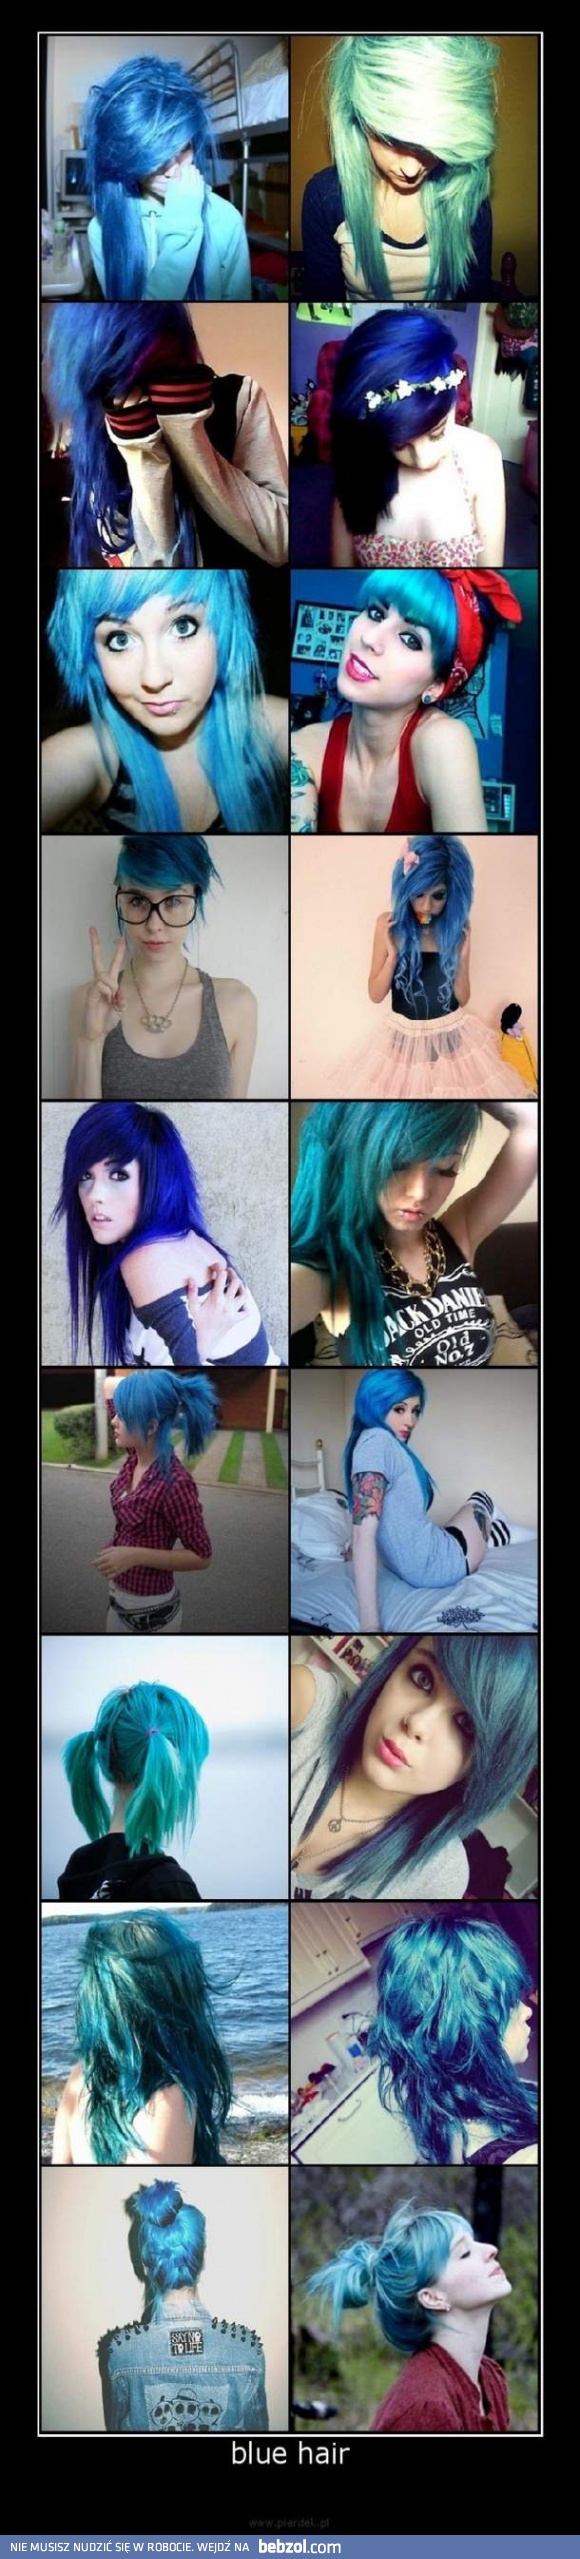 Blue hair! 